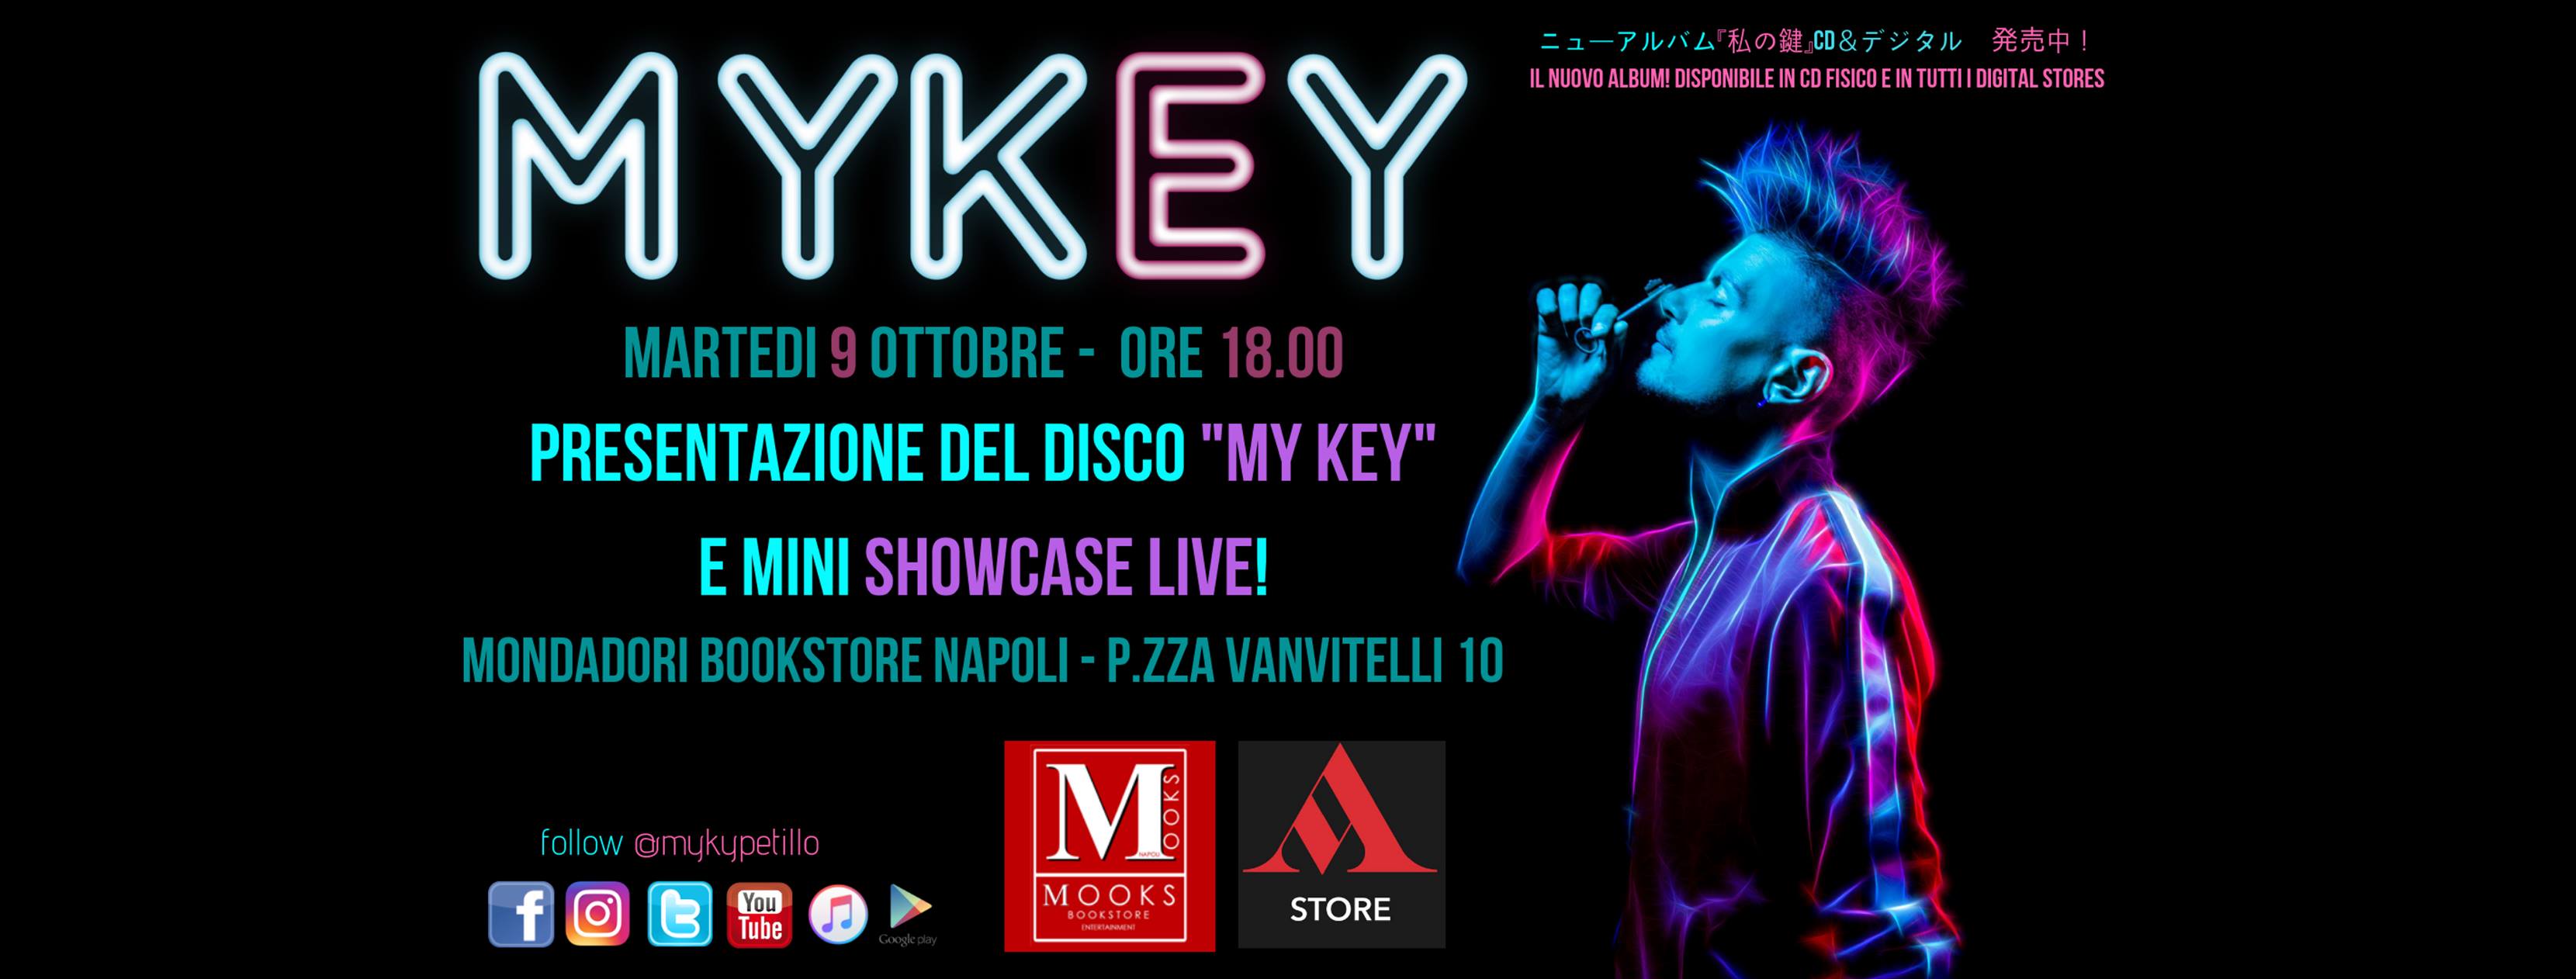 Myky presenta My Key, l'album d'esordio del cantautore pop ciccianese.